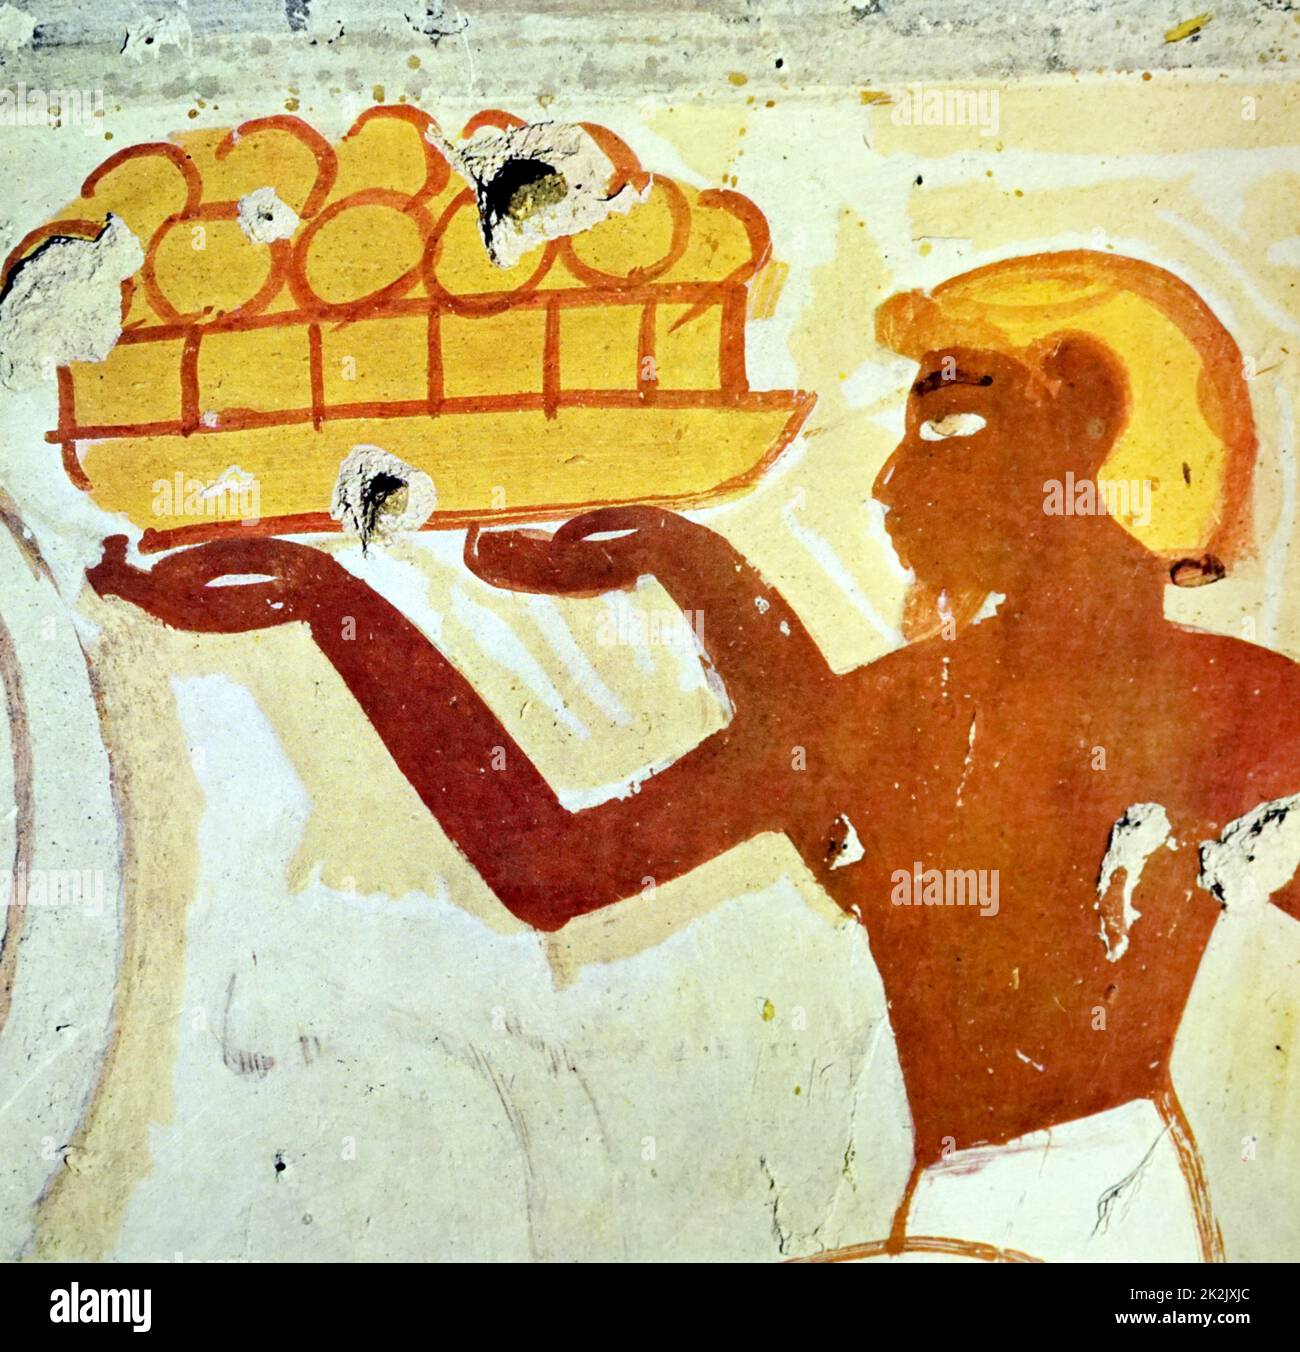 La pintura de la pared tumba egipcia de Tebas, Luxor. Fecha Siglo XI A.C. Foto de stock